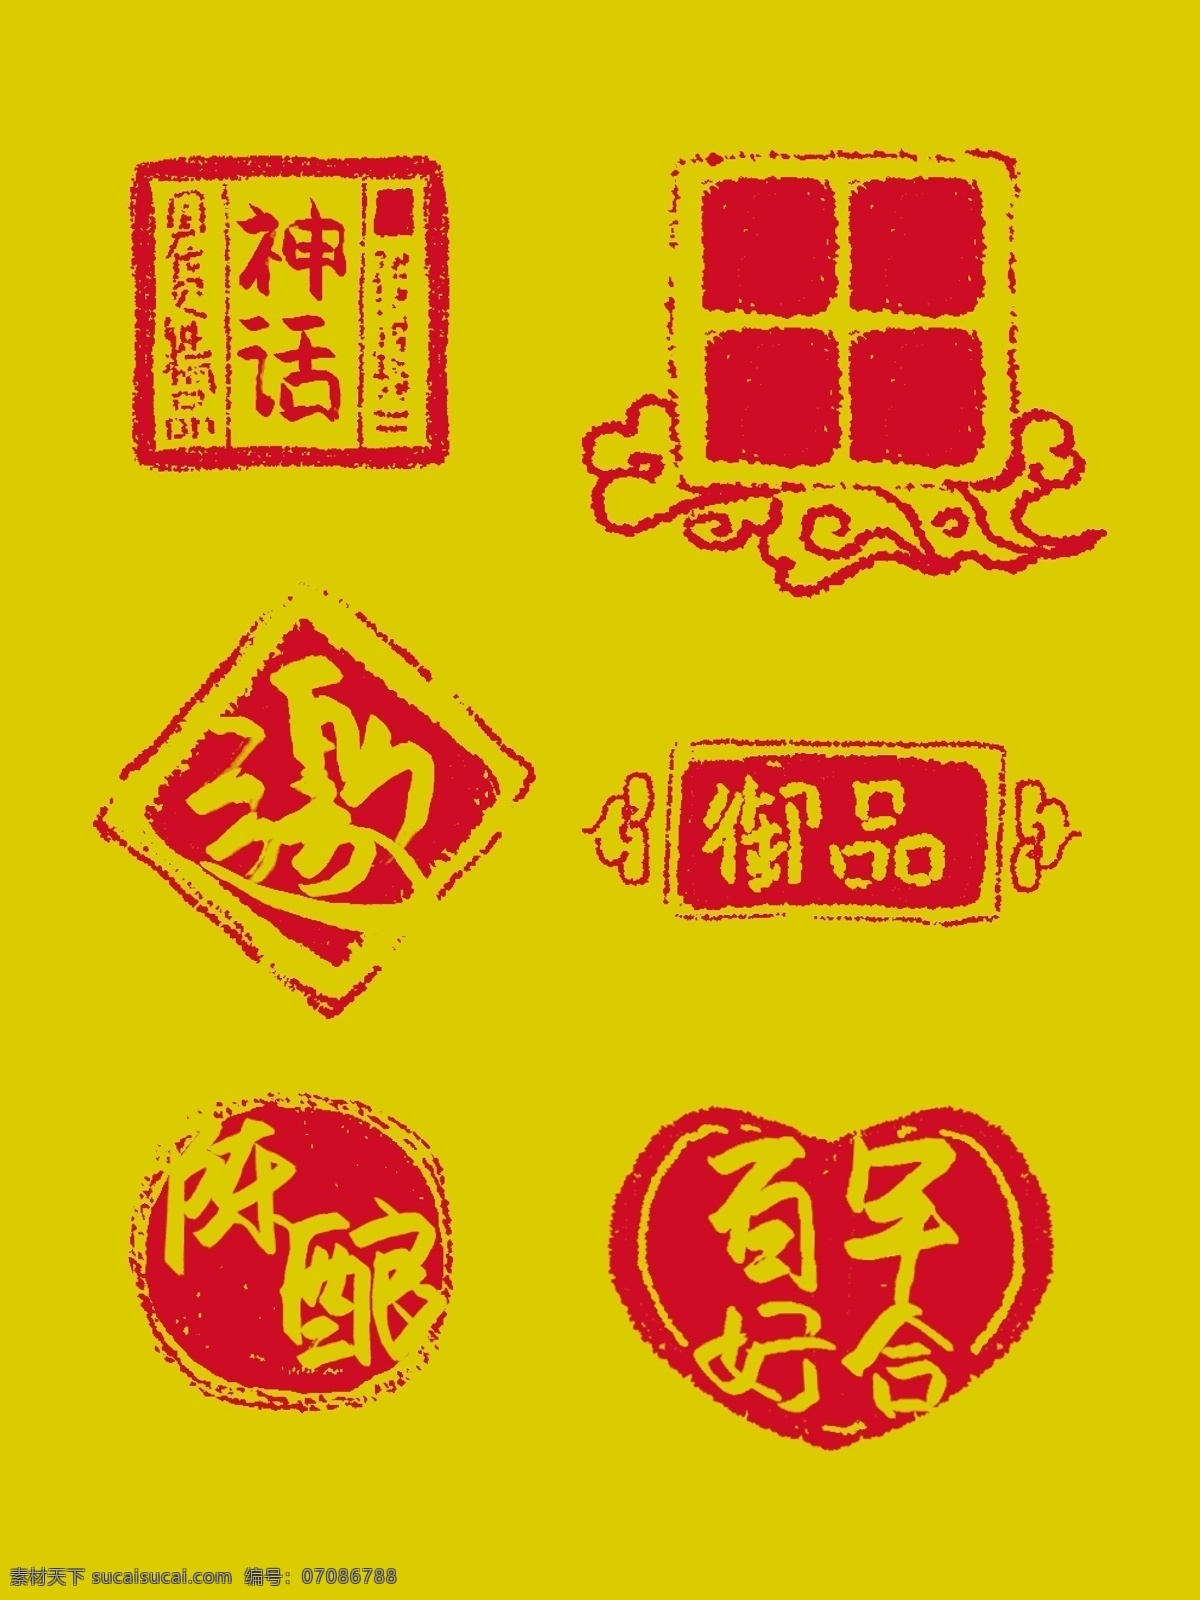 中国红印章 中国古典印章 矢量图 中国古典篆刻 图形 印章图形形状 篆刻印章 中国红 装饰 印张 印章 红色印章 篆刻 篆刻图案 素材类 分层